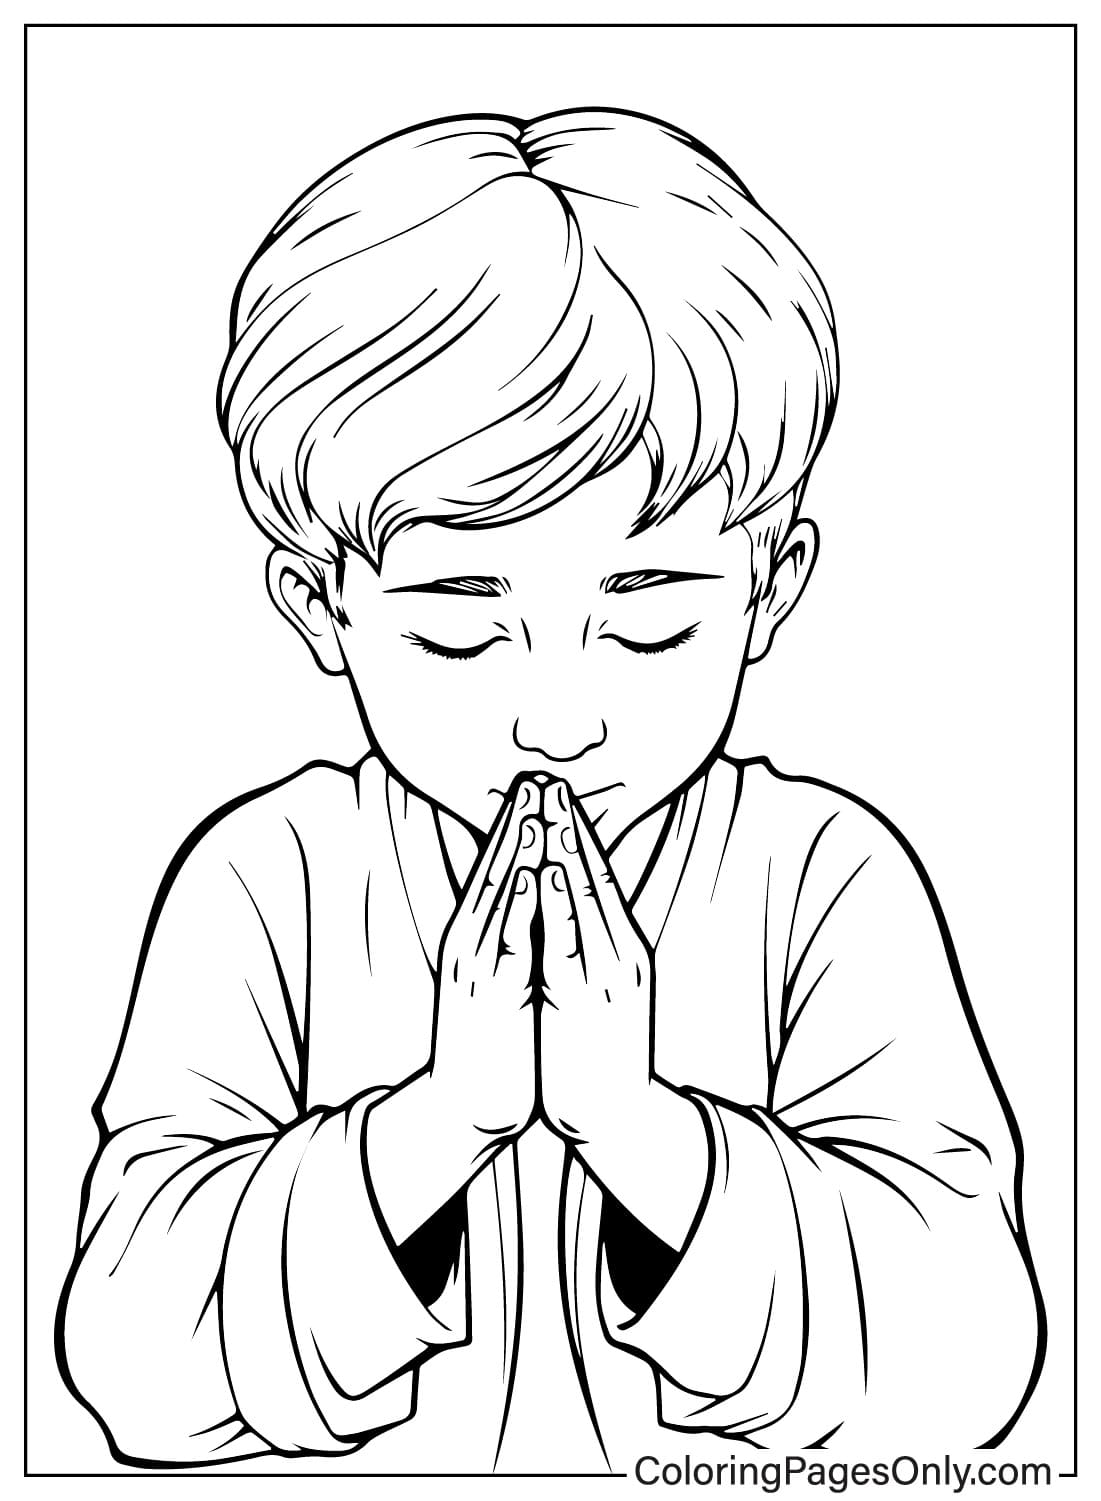 Garçon priant du jour de prière